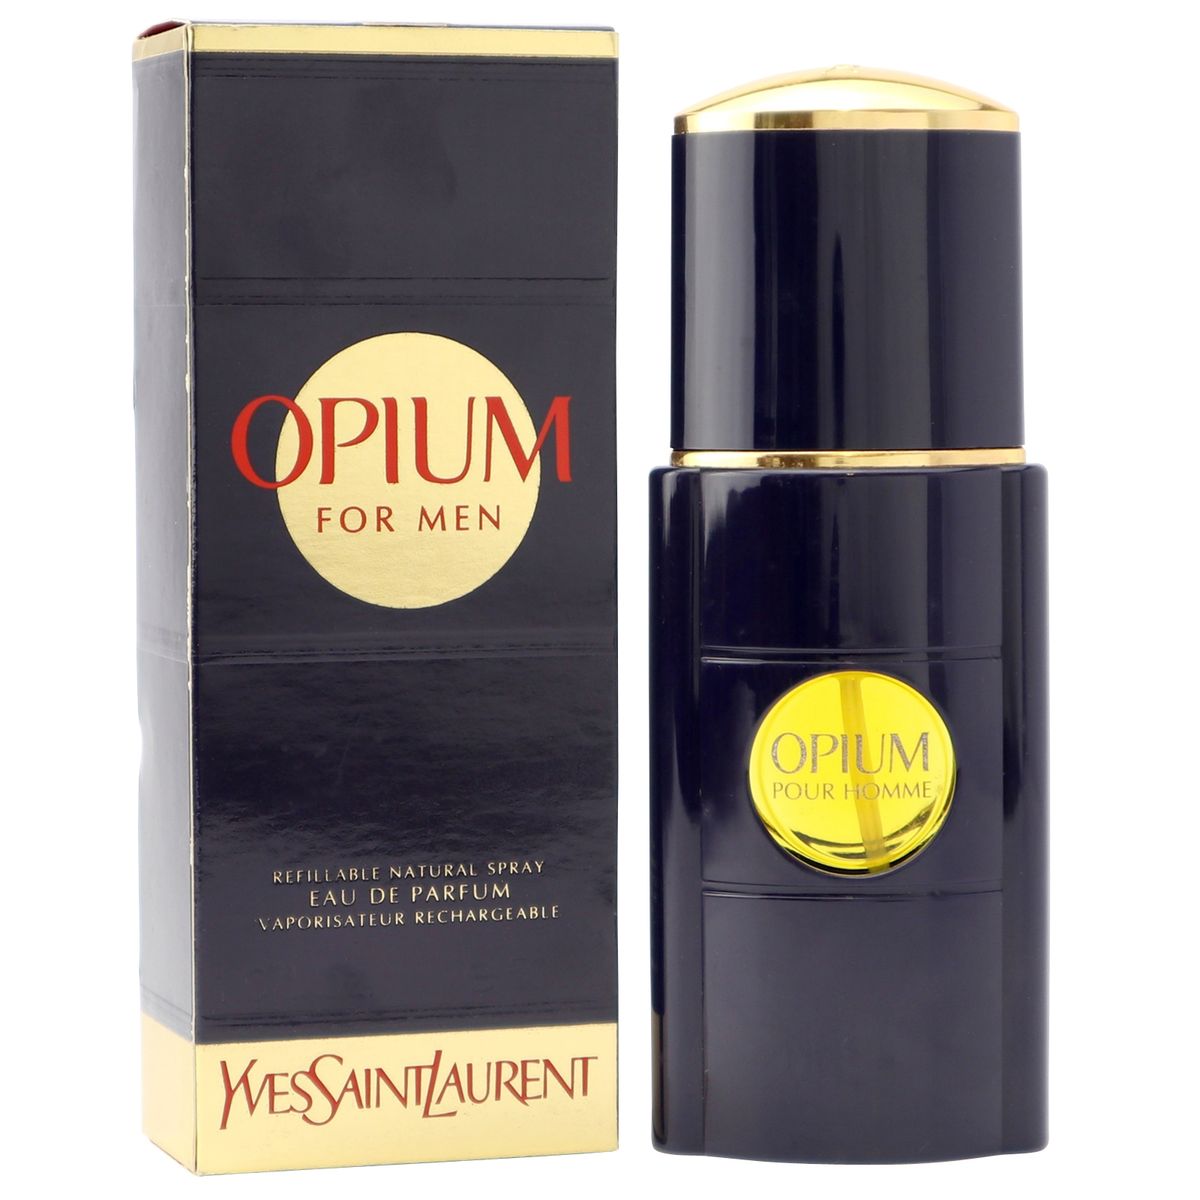 Yves Saint Laurent Opium Pour Homme Eau de Parfum Spray 50 ml refillable YSL  old Vintage Version